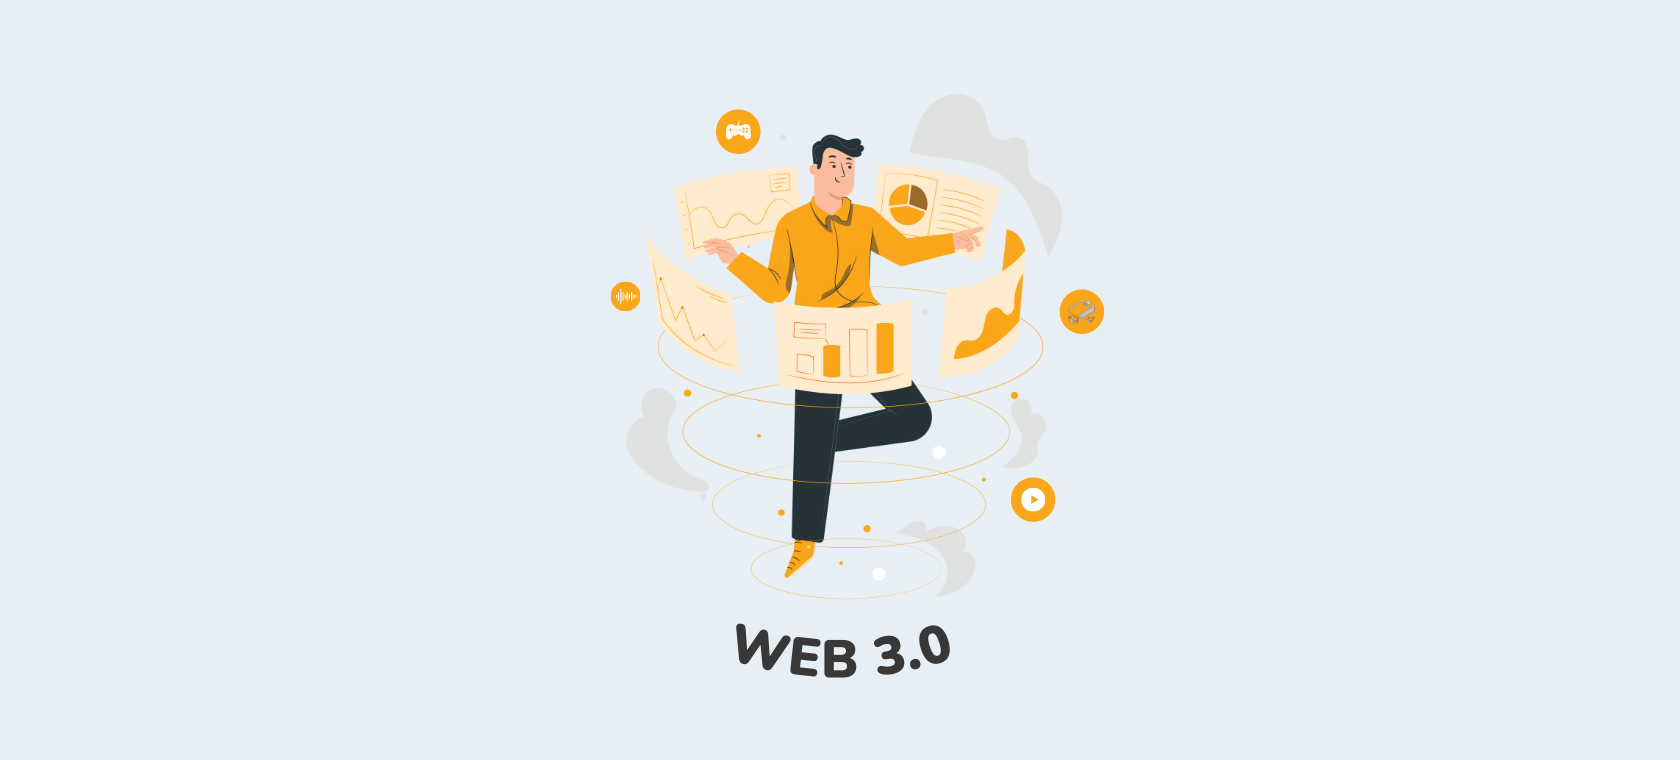 Što je Web 3.0? Sve što trebate znati o internetu budućnosti